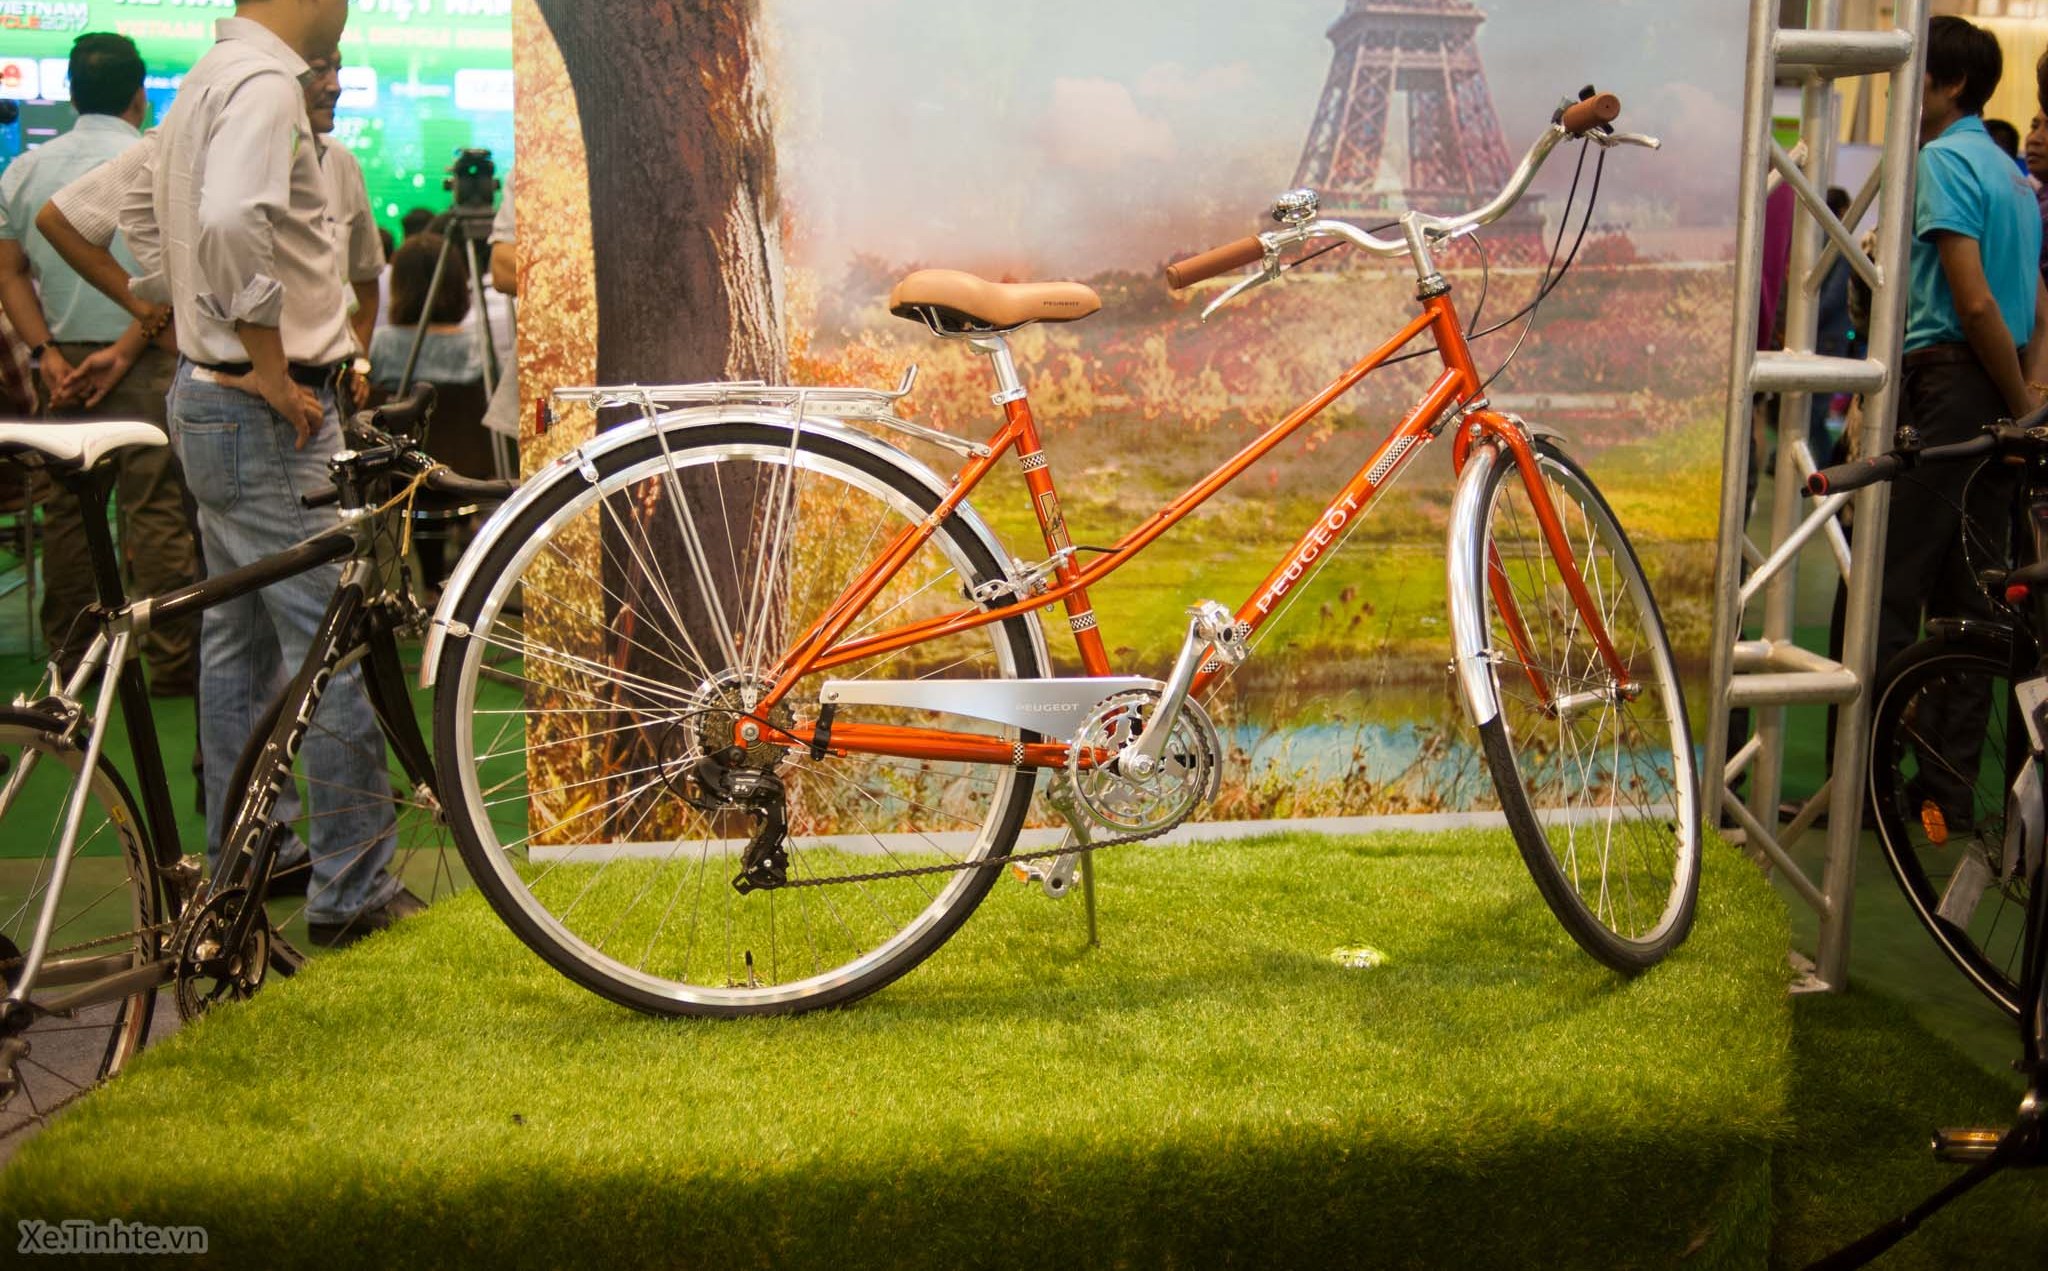 Triển lãm xe đạp Vietnam Cycle 2019 sẽ được kết hợp cùng Triển lãm thể thao Vietnam Sport Show